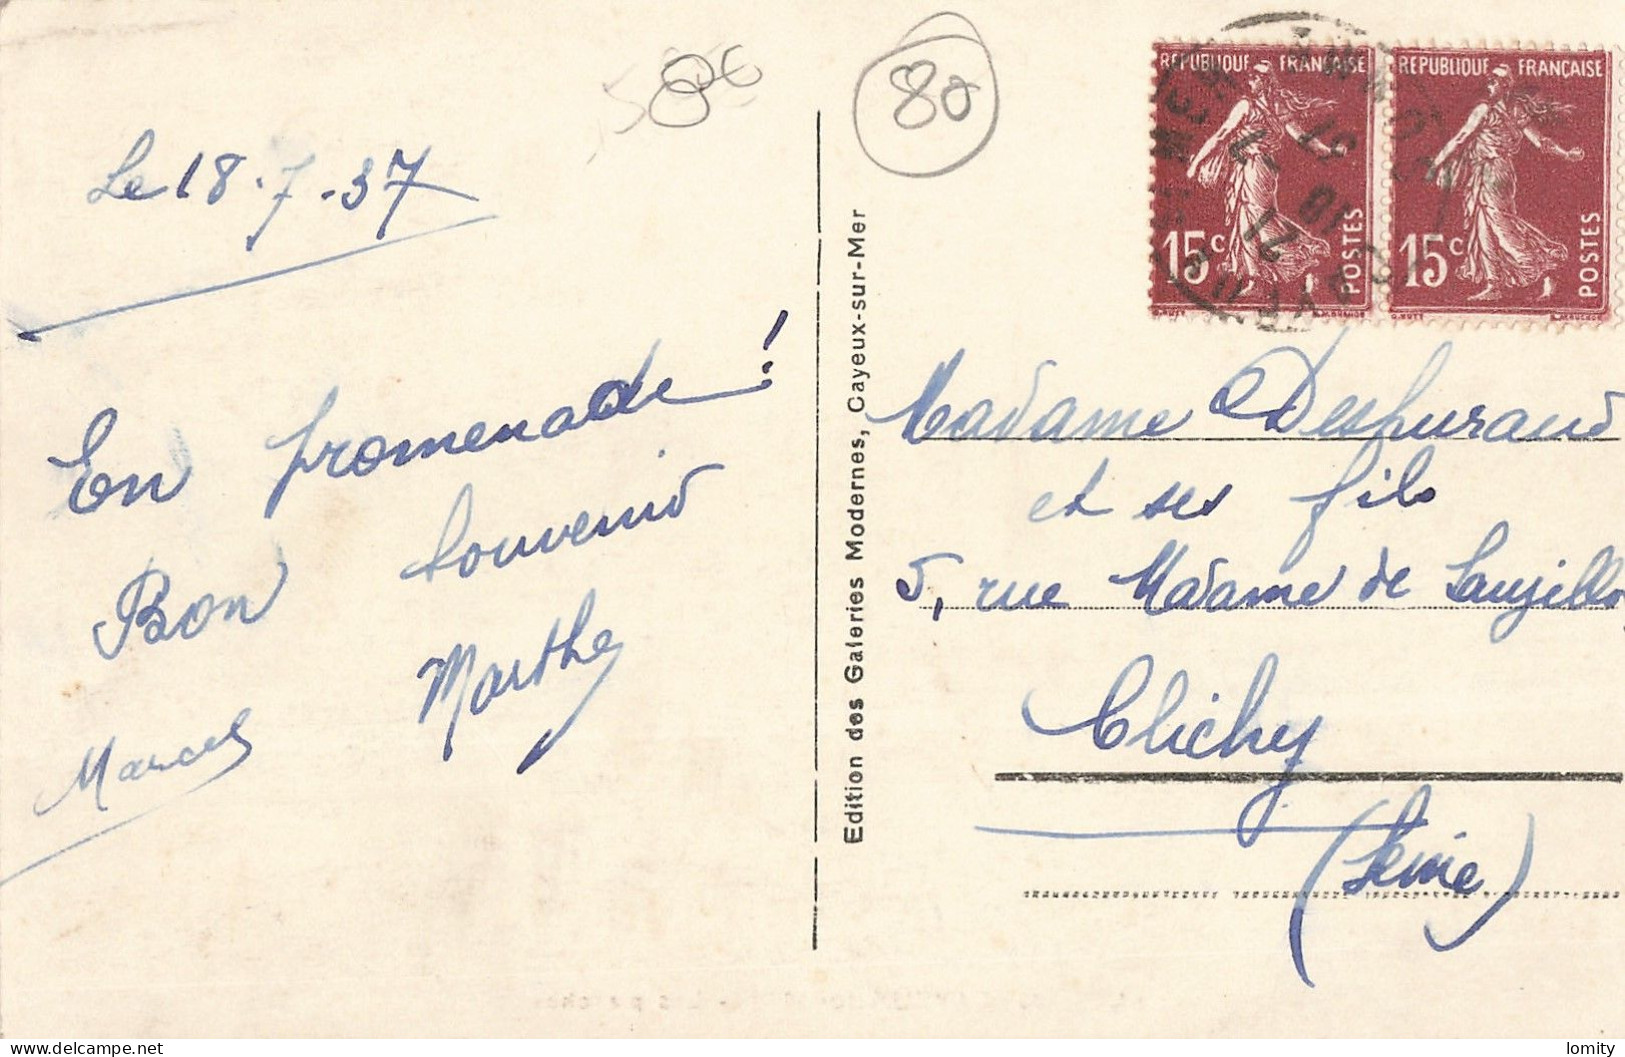 Destockage lot de 12 cartes postales CPA de la Somme Mers les bains Cayeux sur Mer Amiens Abbeville Bois de Cise